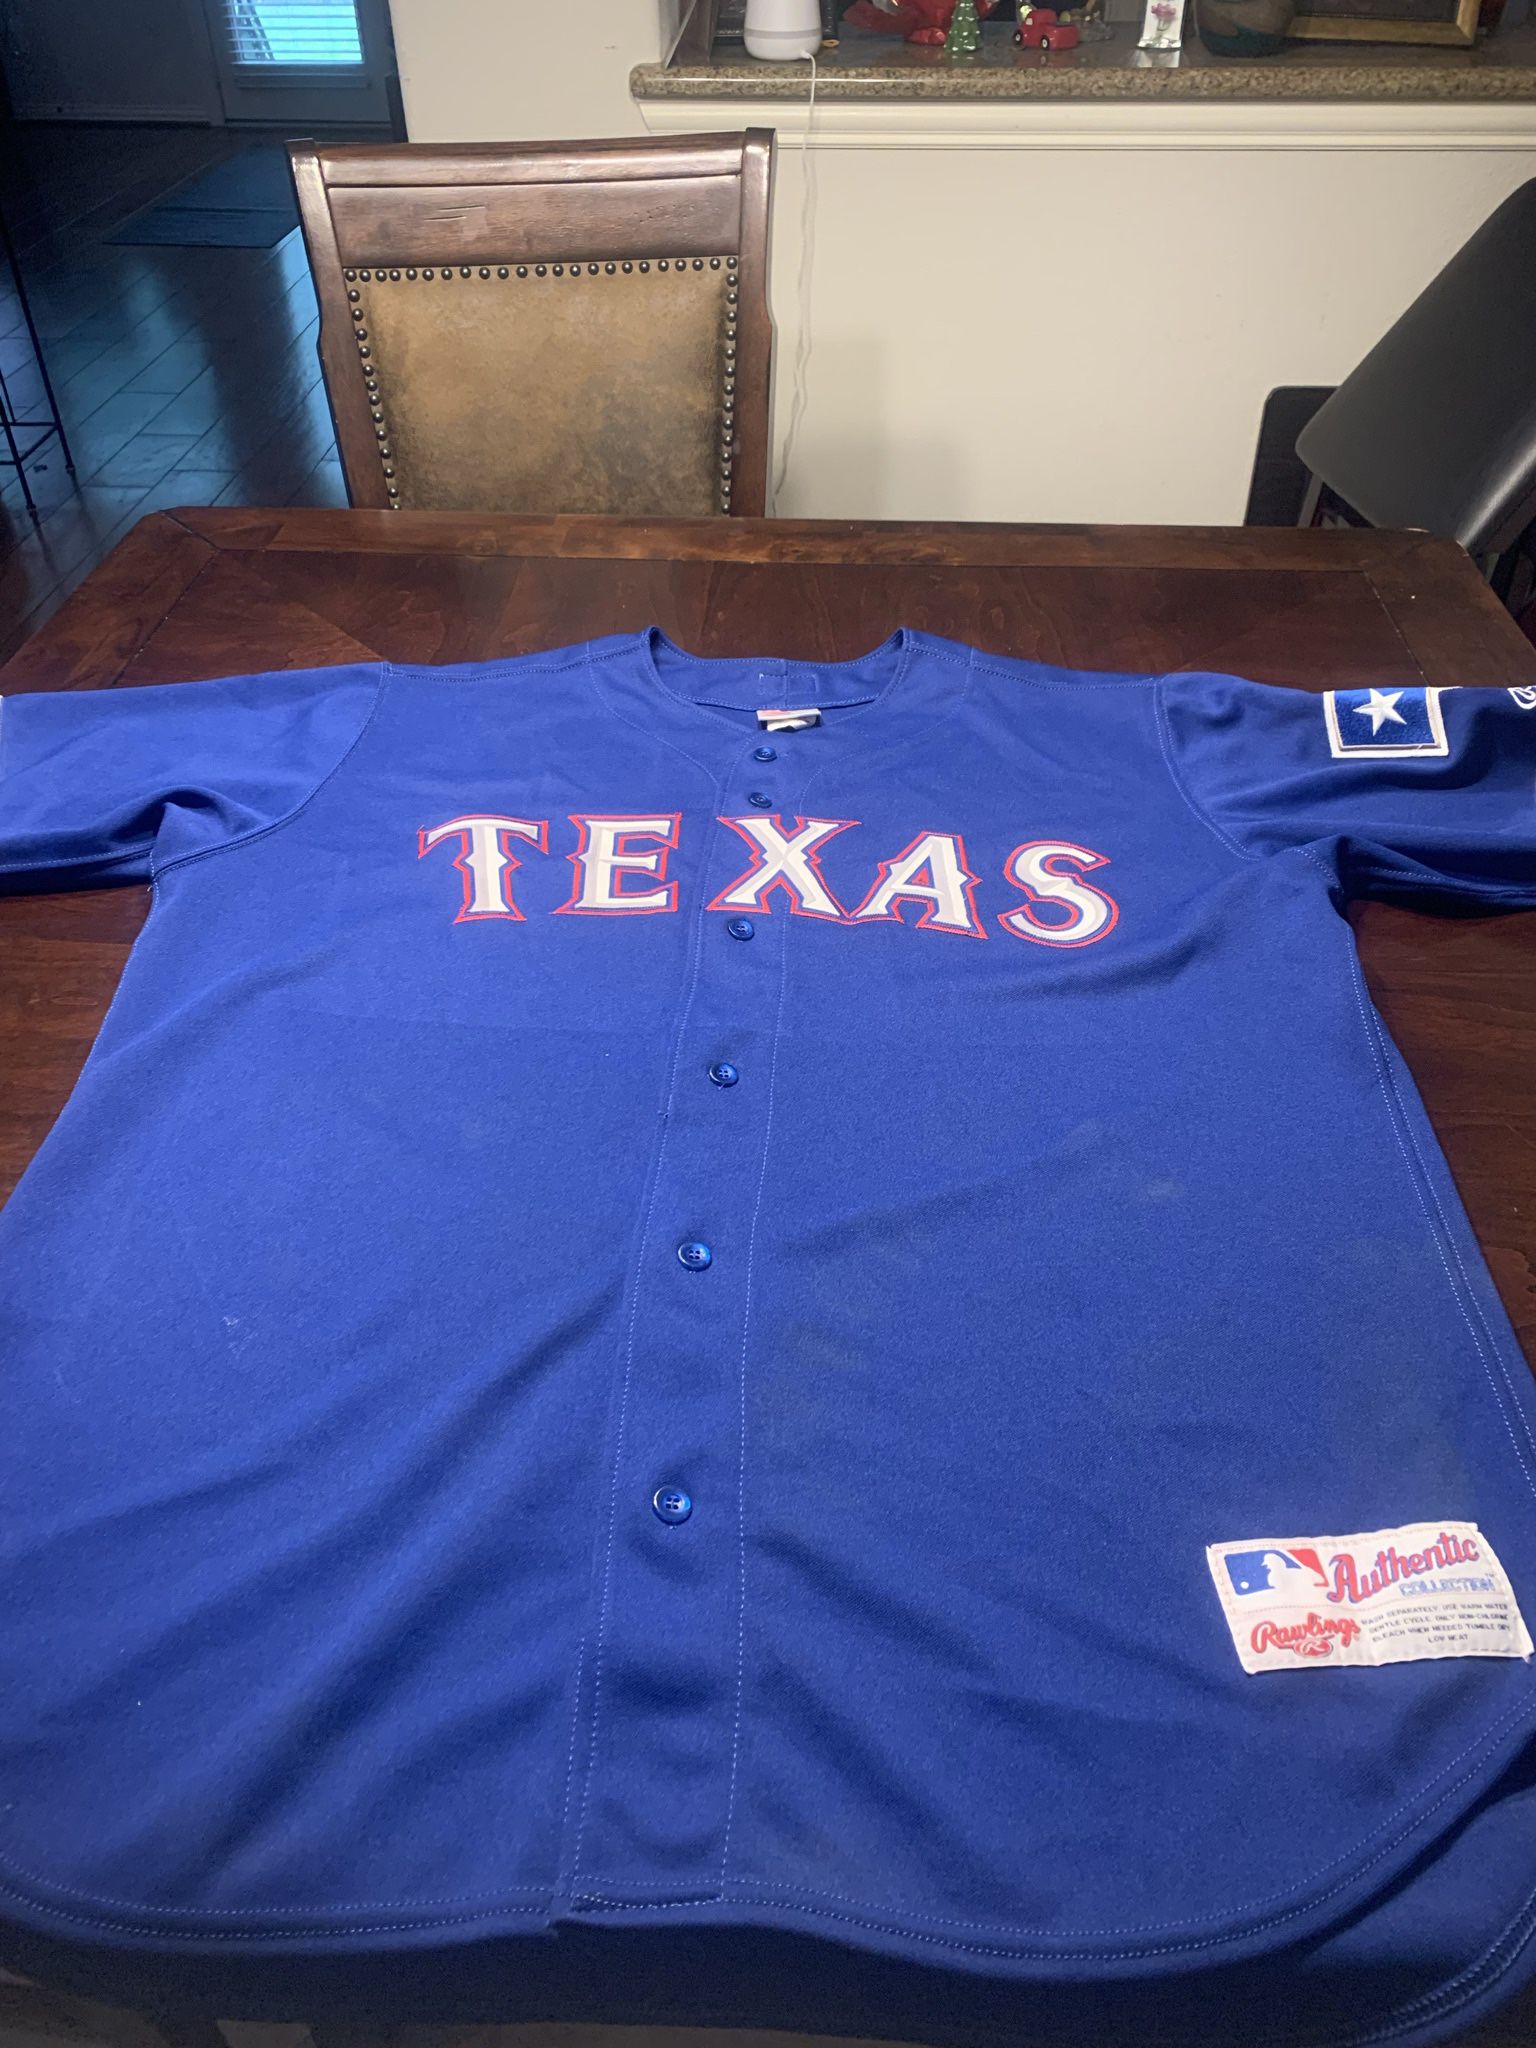 Texas Rangers fan jersey